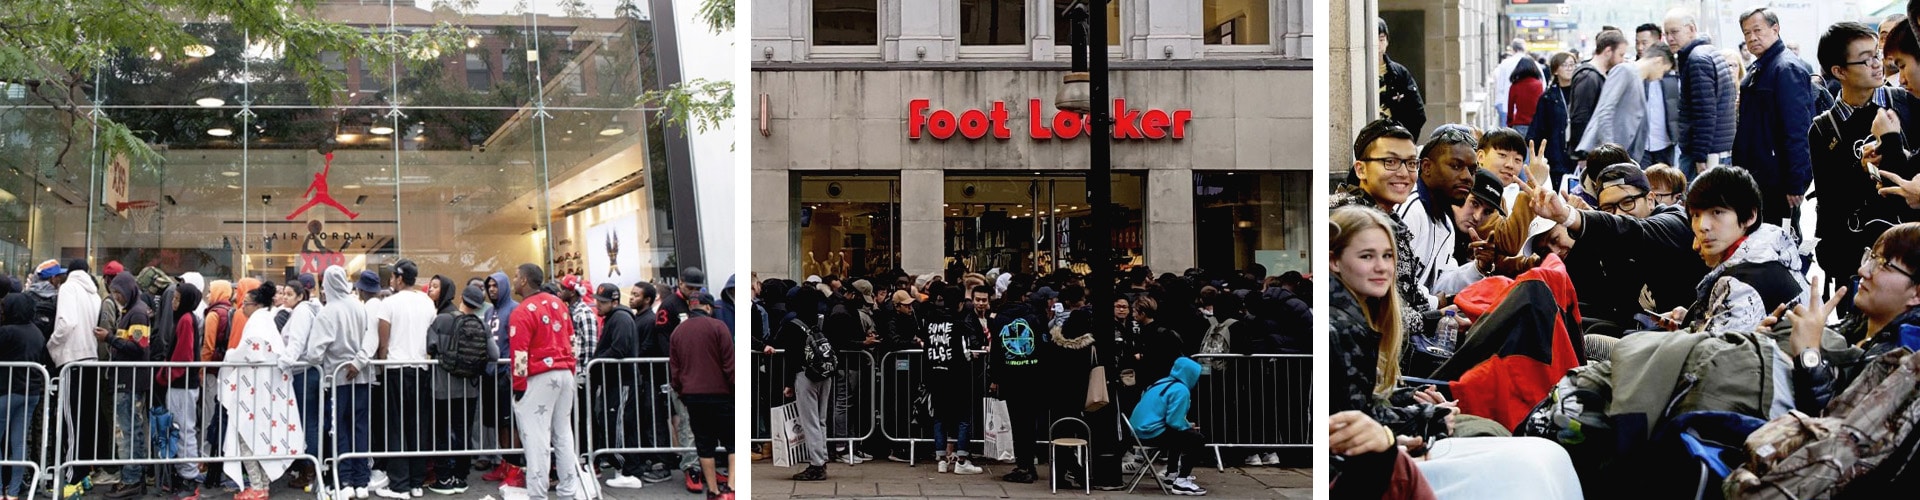 brand identity - crowd outside foot locker